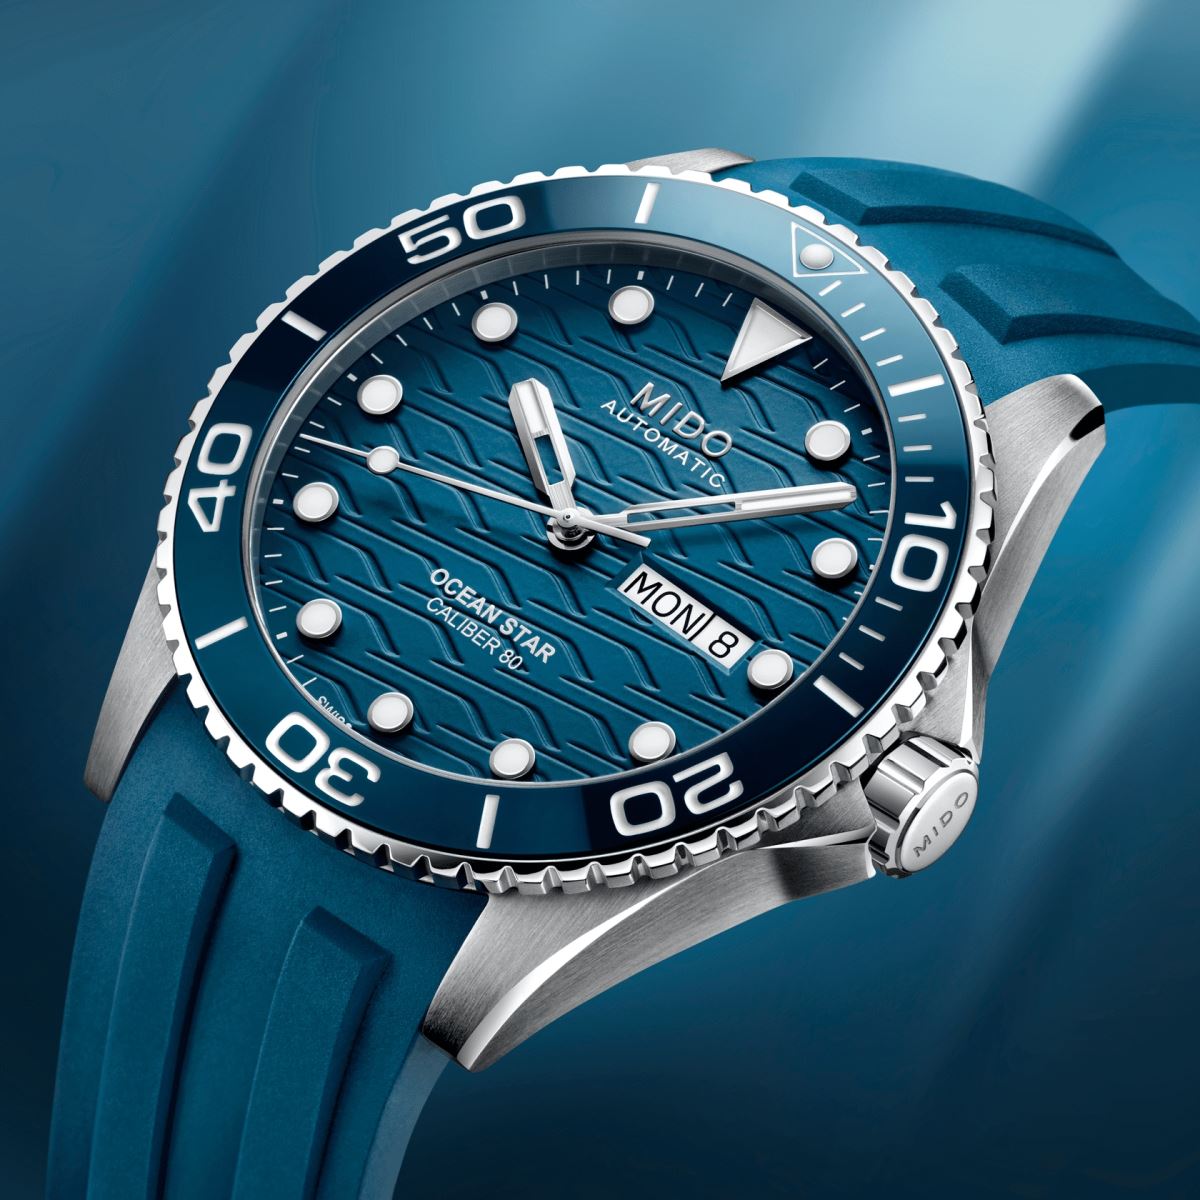 Mido cho ra mắt mẫu đồng hồ lặn Ocean Star 200C Blue mới